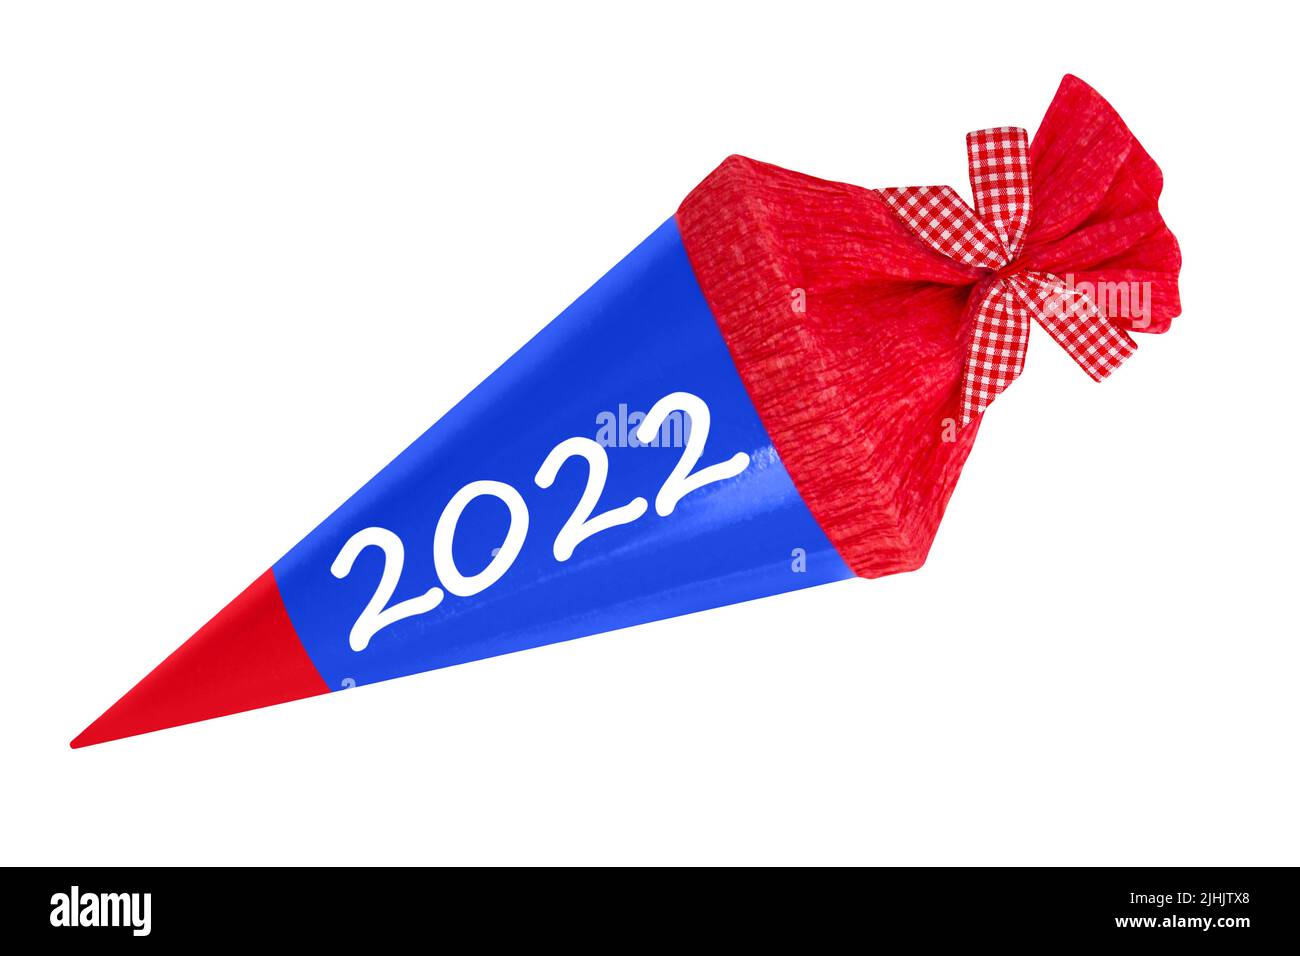 Schultüte für den ersten Schultag 2022 auf weissem Hintergrund Stock Photo